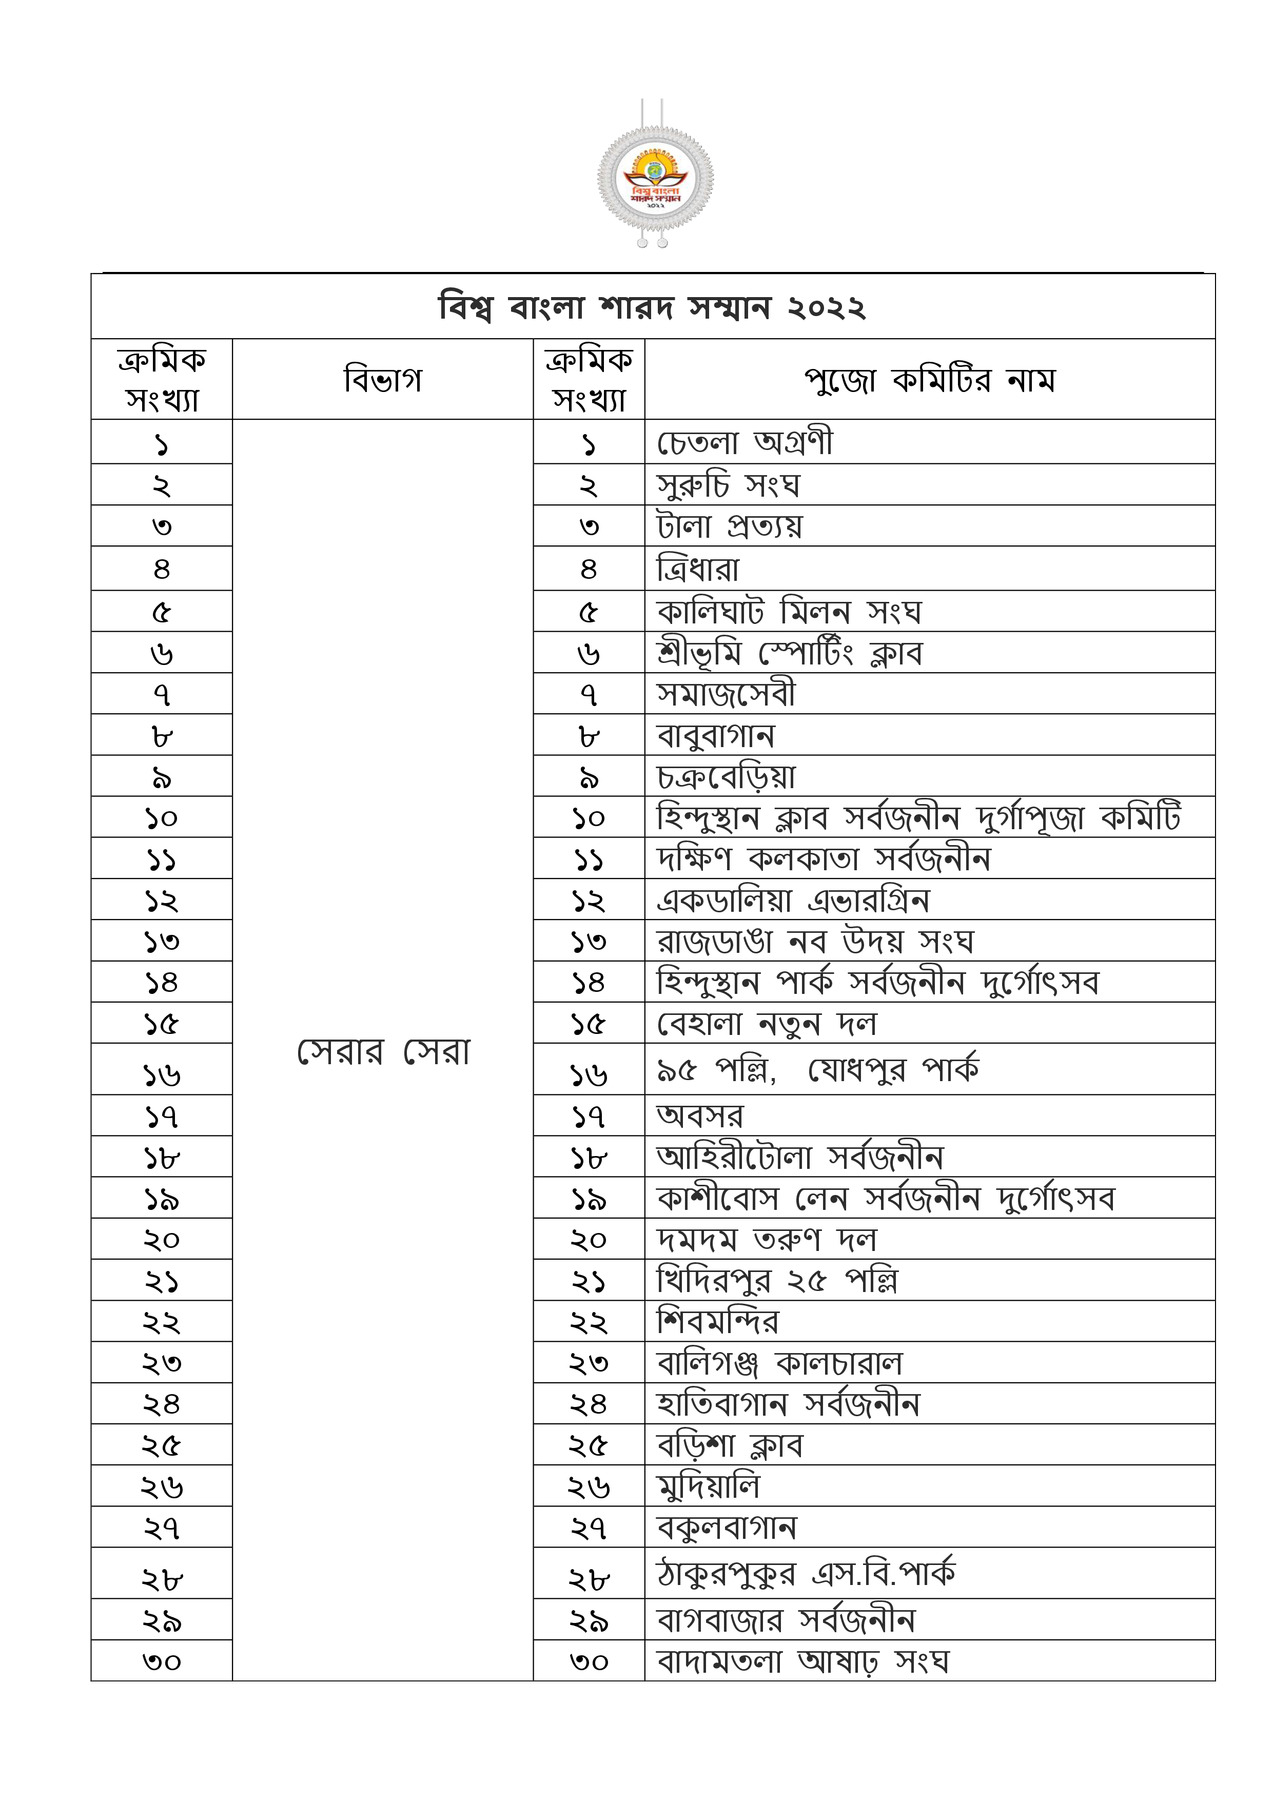 Biswa Bangla Sharad Samman (BBSS) 2022 Winners List PDF